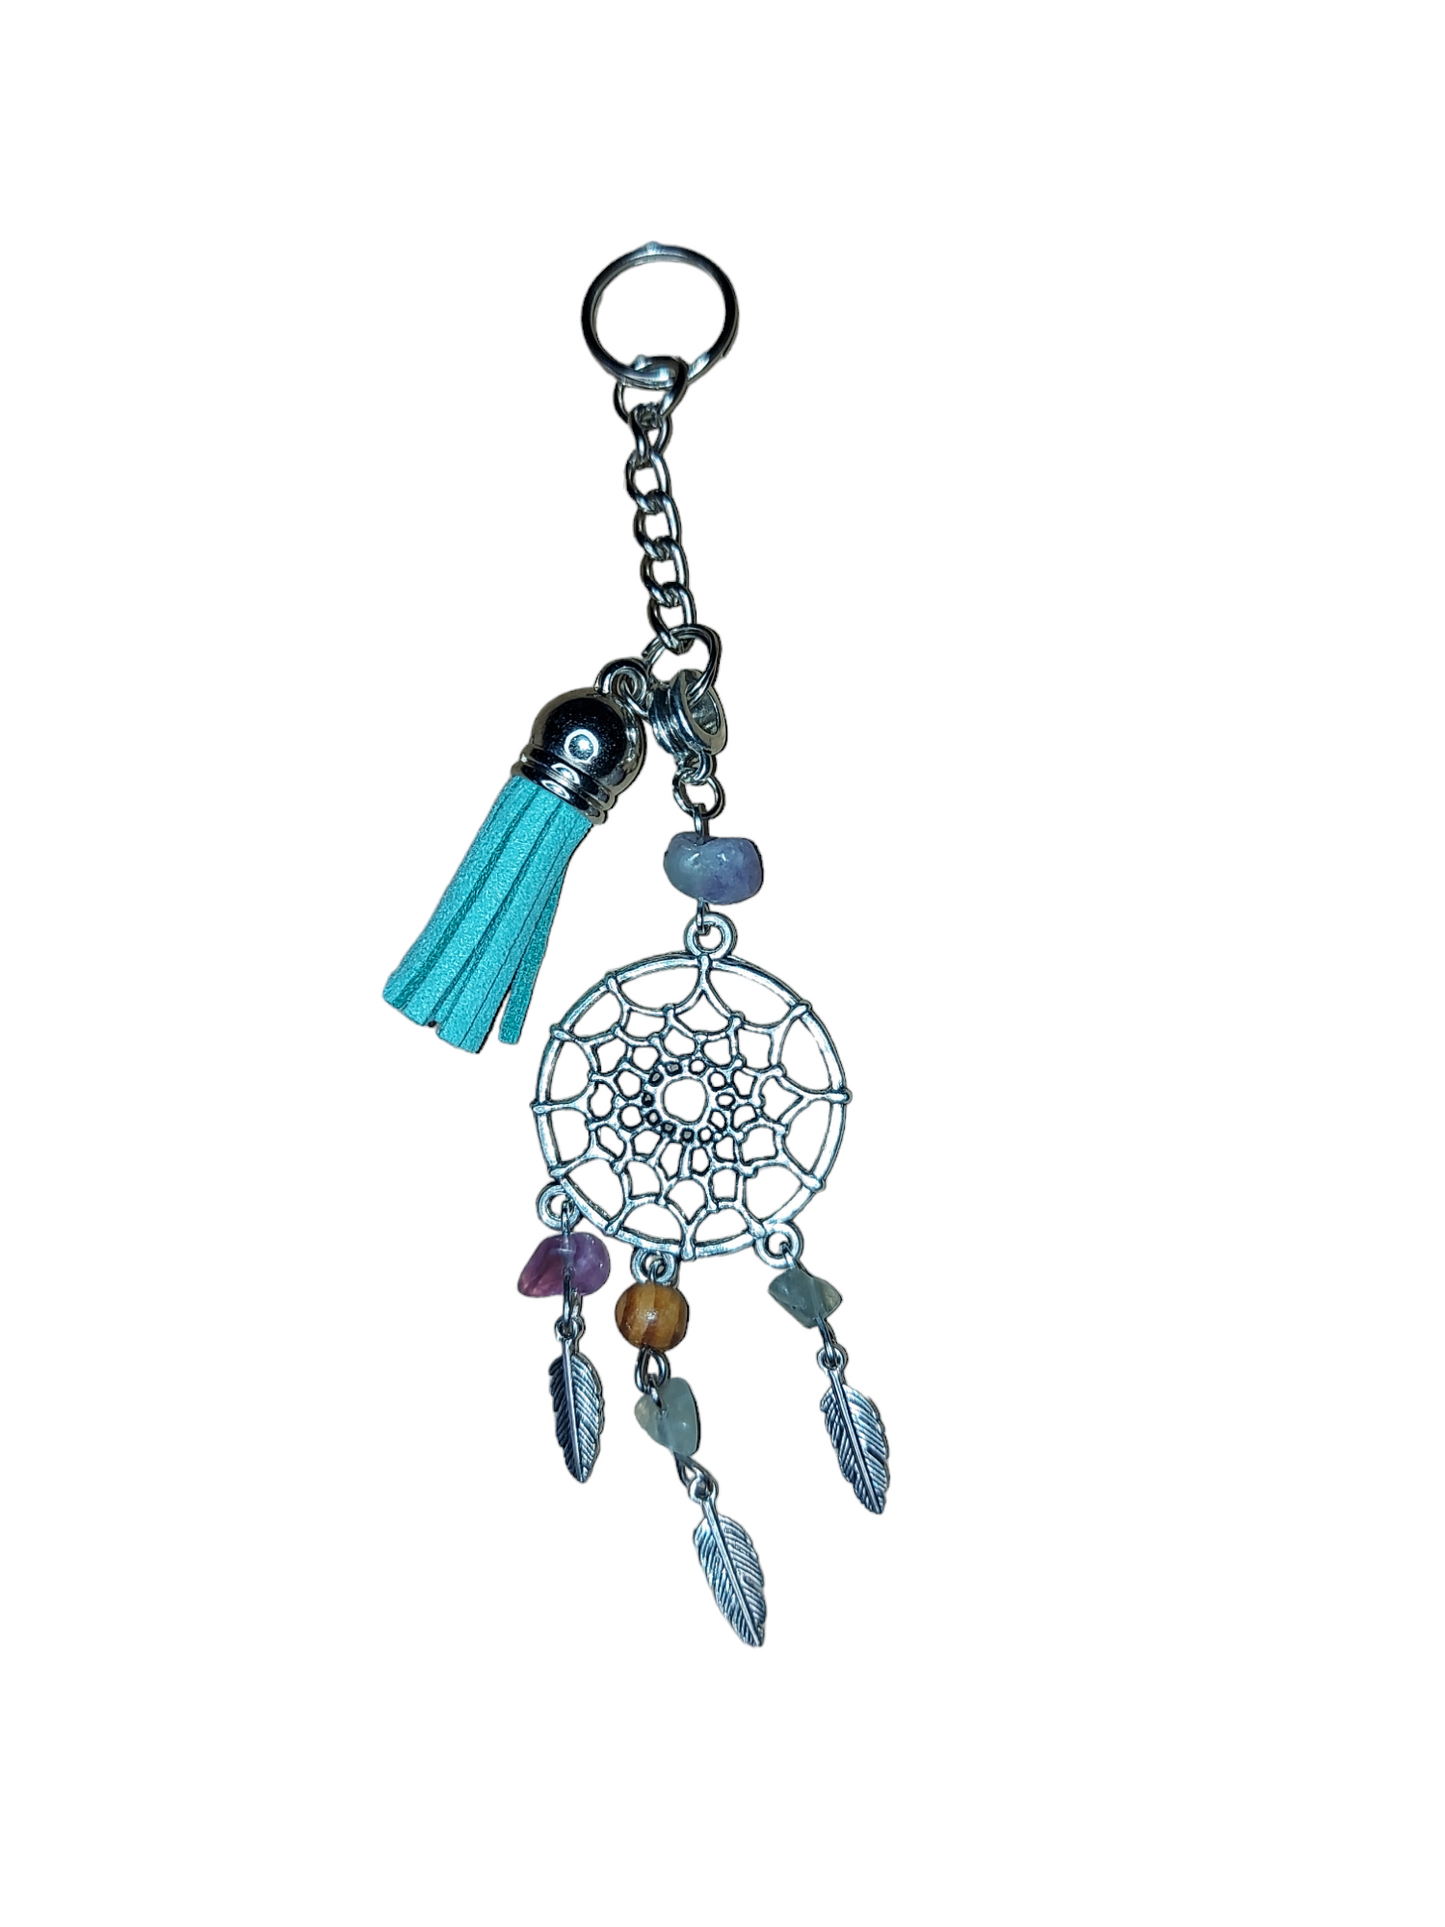 Dreamcatcher Keychain with Semiprecious Gemstones